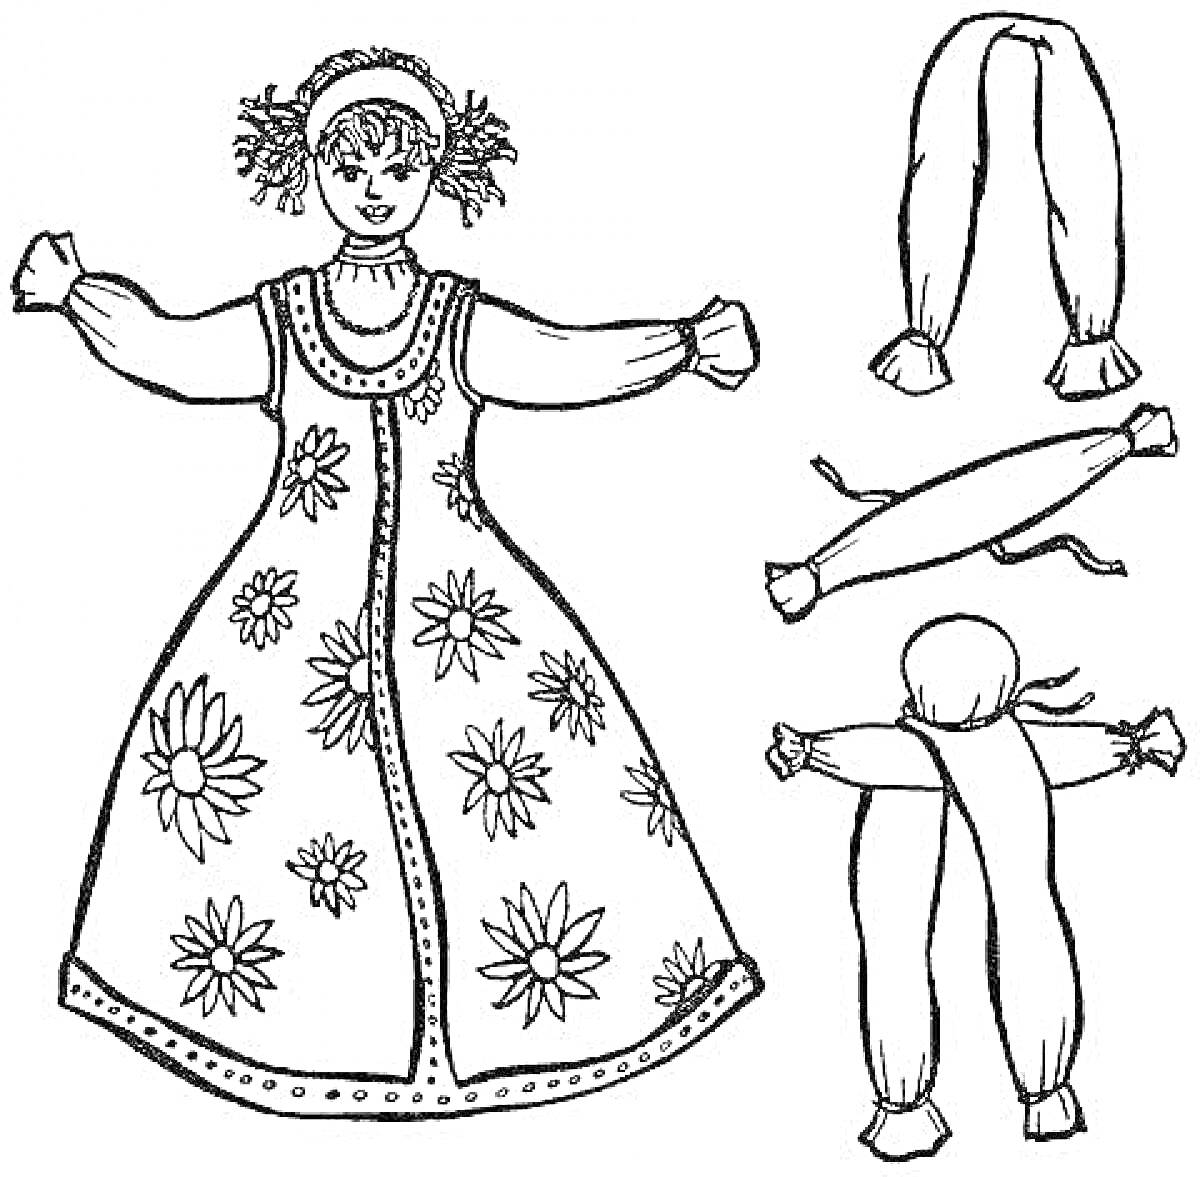 Раскраска Кукла Масленица с деталями для сборки: кукла в платье с цветами, голова, руки и ноги для вырезания и присоединения